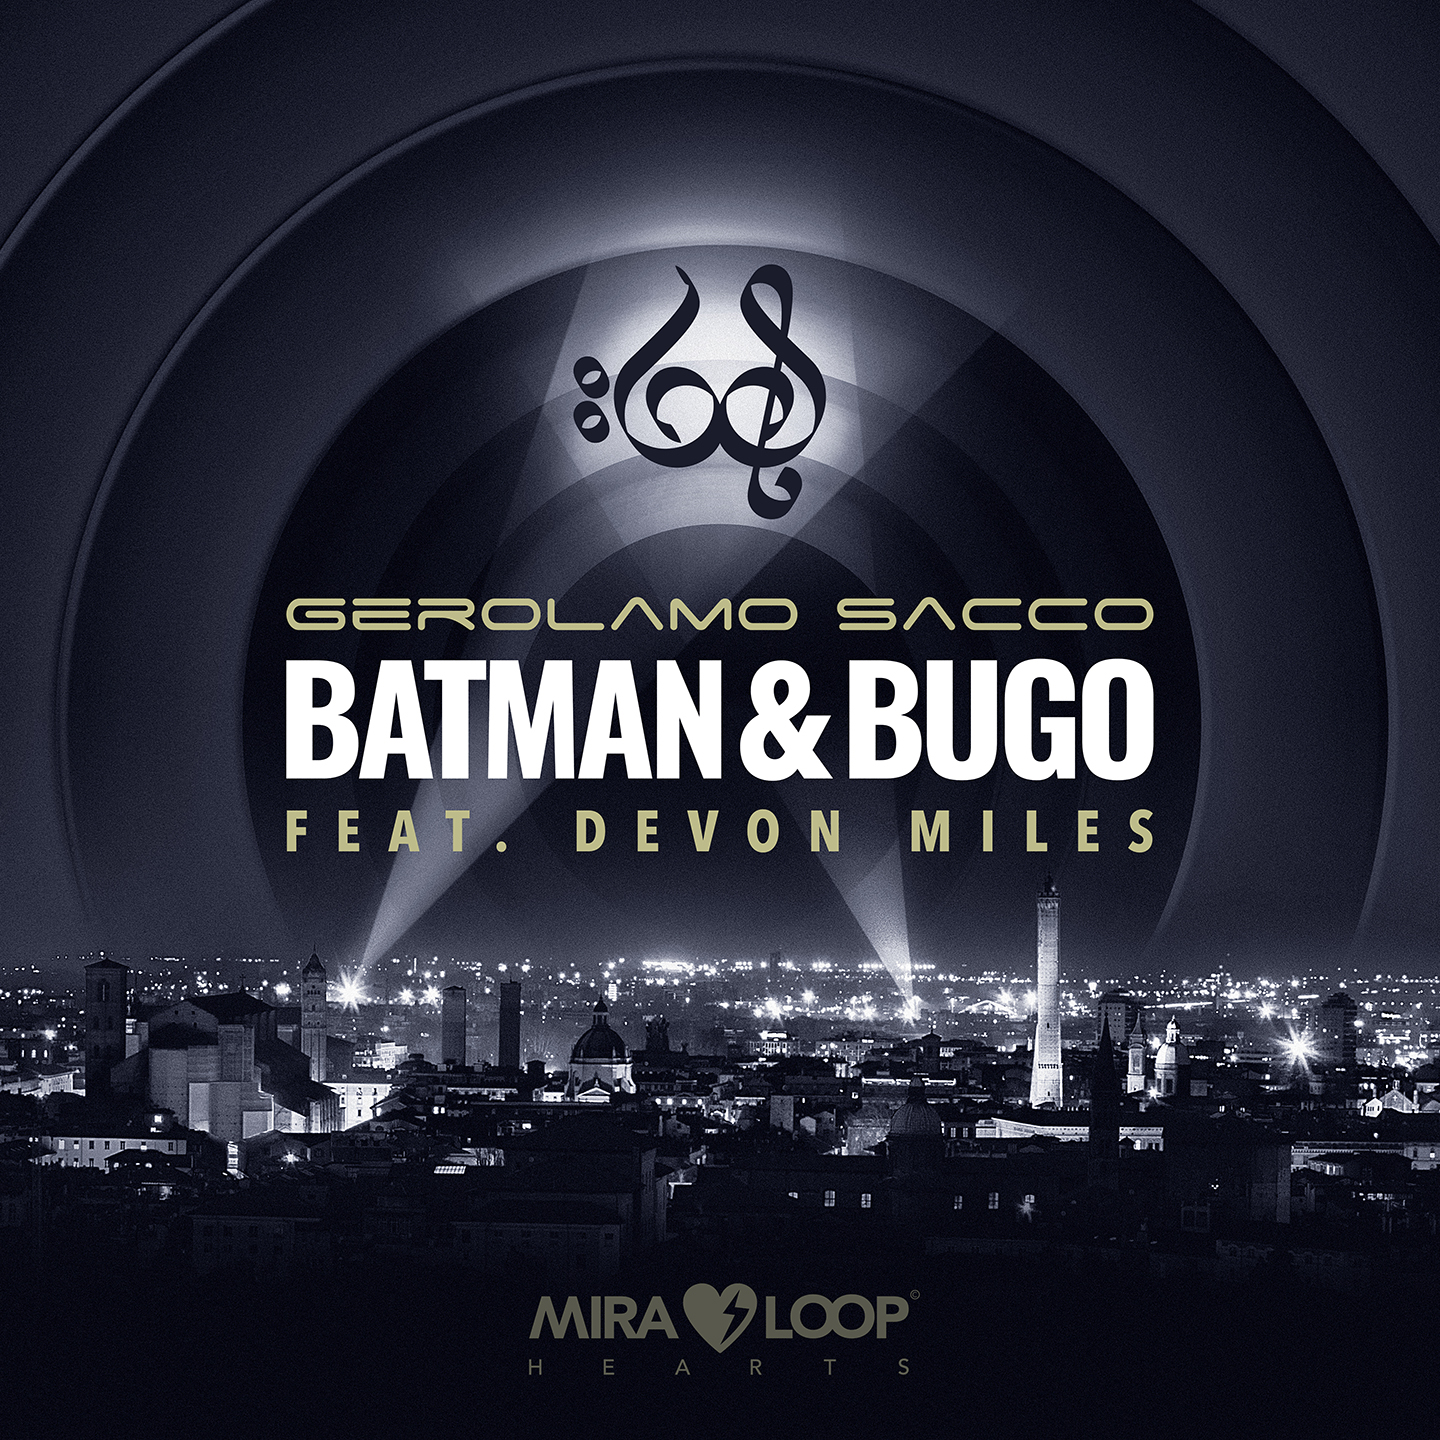 GEROLAMO SACCO   “BATMAN & BUGO” (FEAT. DEVON MILES) - 11 settembre 2020  il nuovo singolo